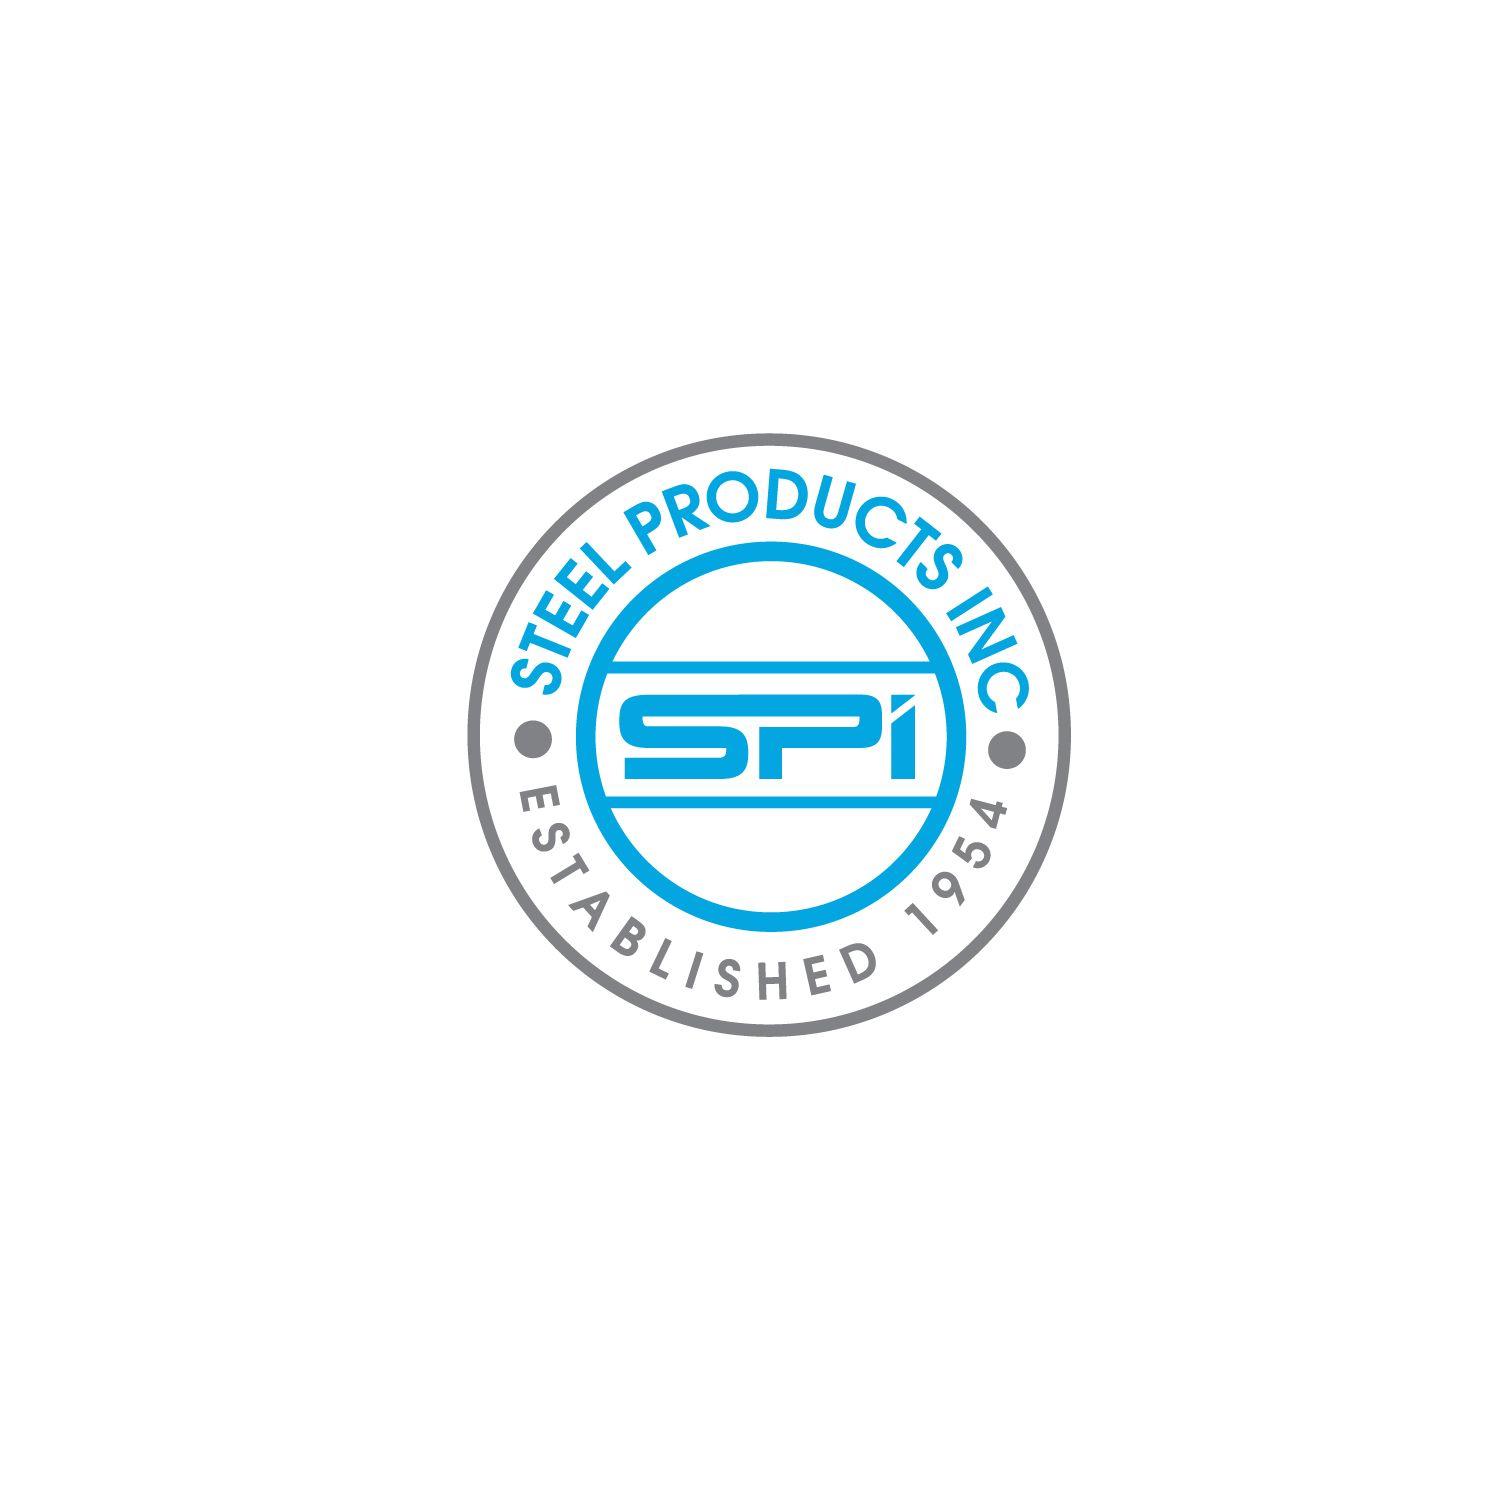 Established Logo - Modern, Professional Logo Design for Steel Products Inc ...